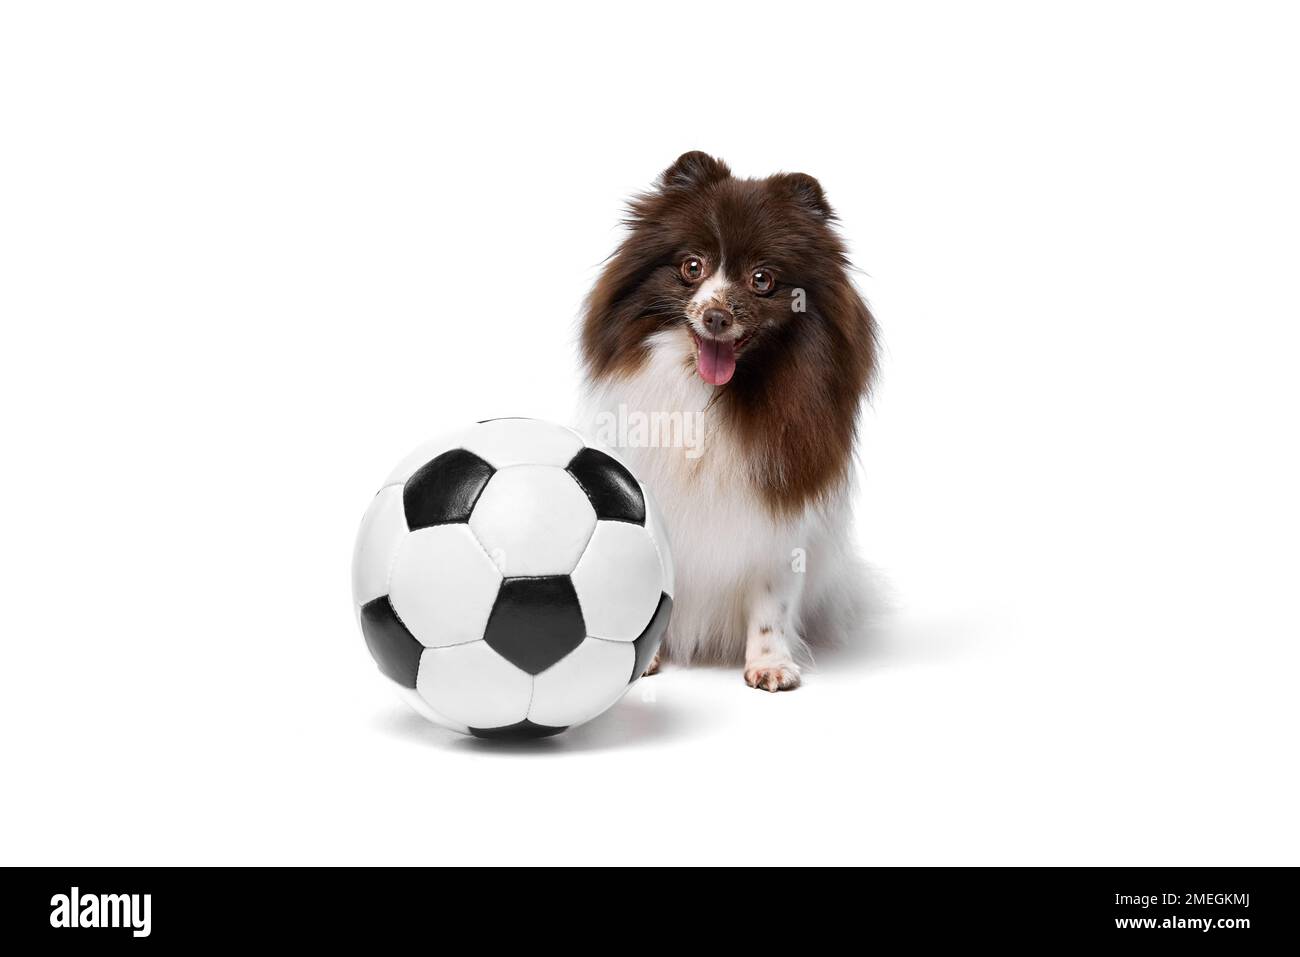 Un chien spitz de Pomeranian assis près du ballon de football isolé sur fond blanc de studio. Concept de fans de sport, santé animale, vétérinaire, action Banque D'Images